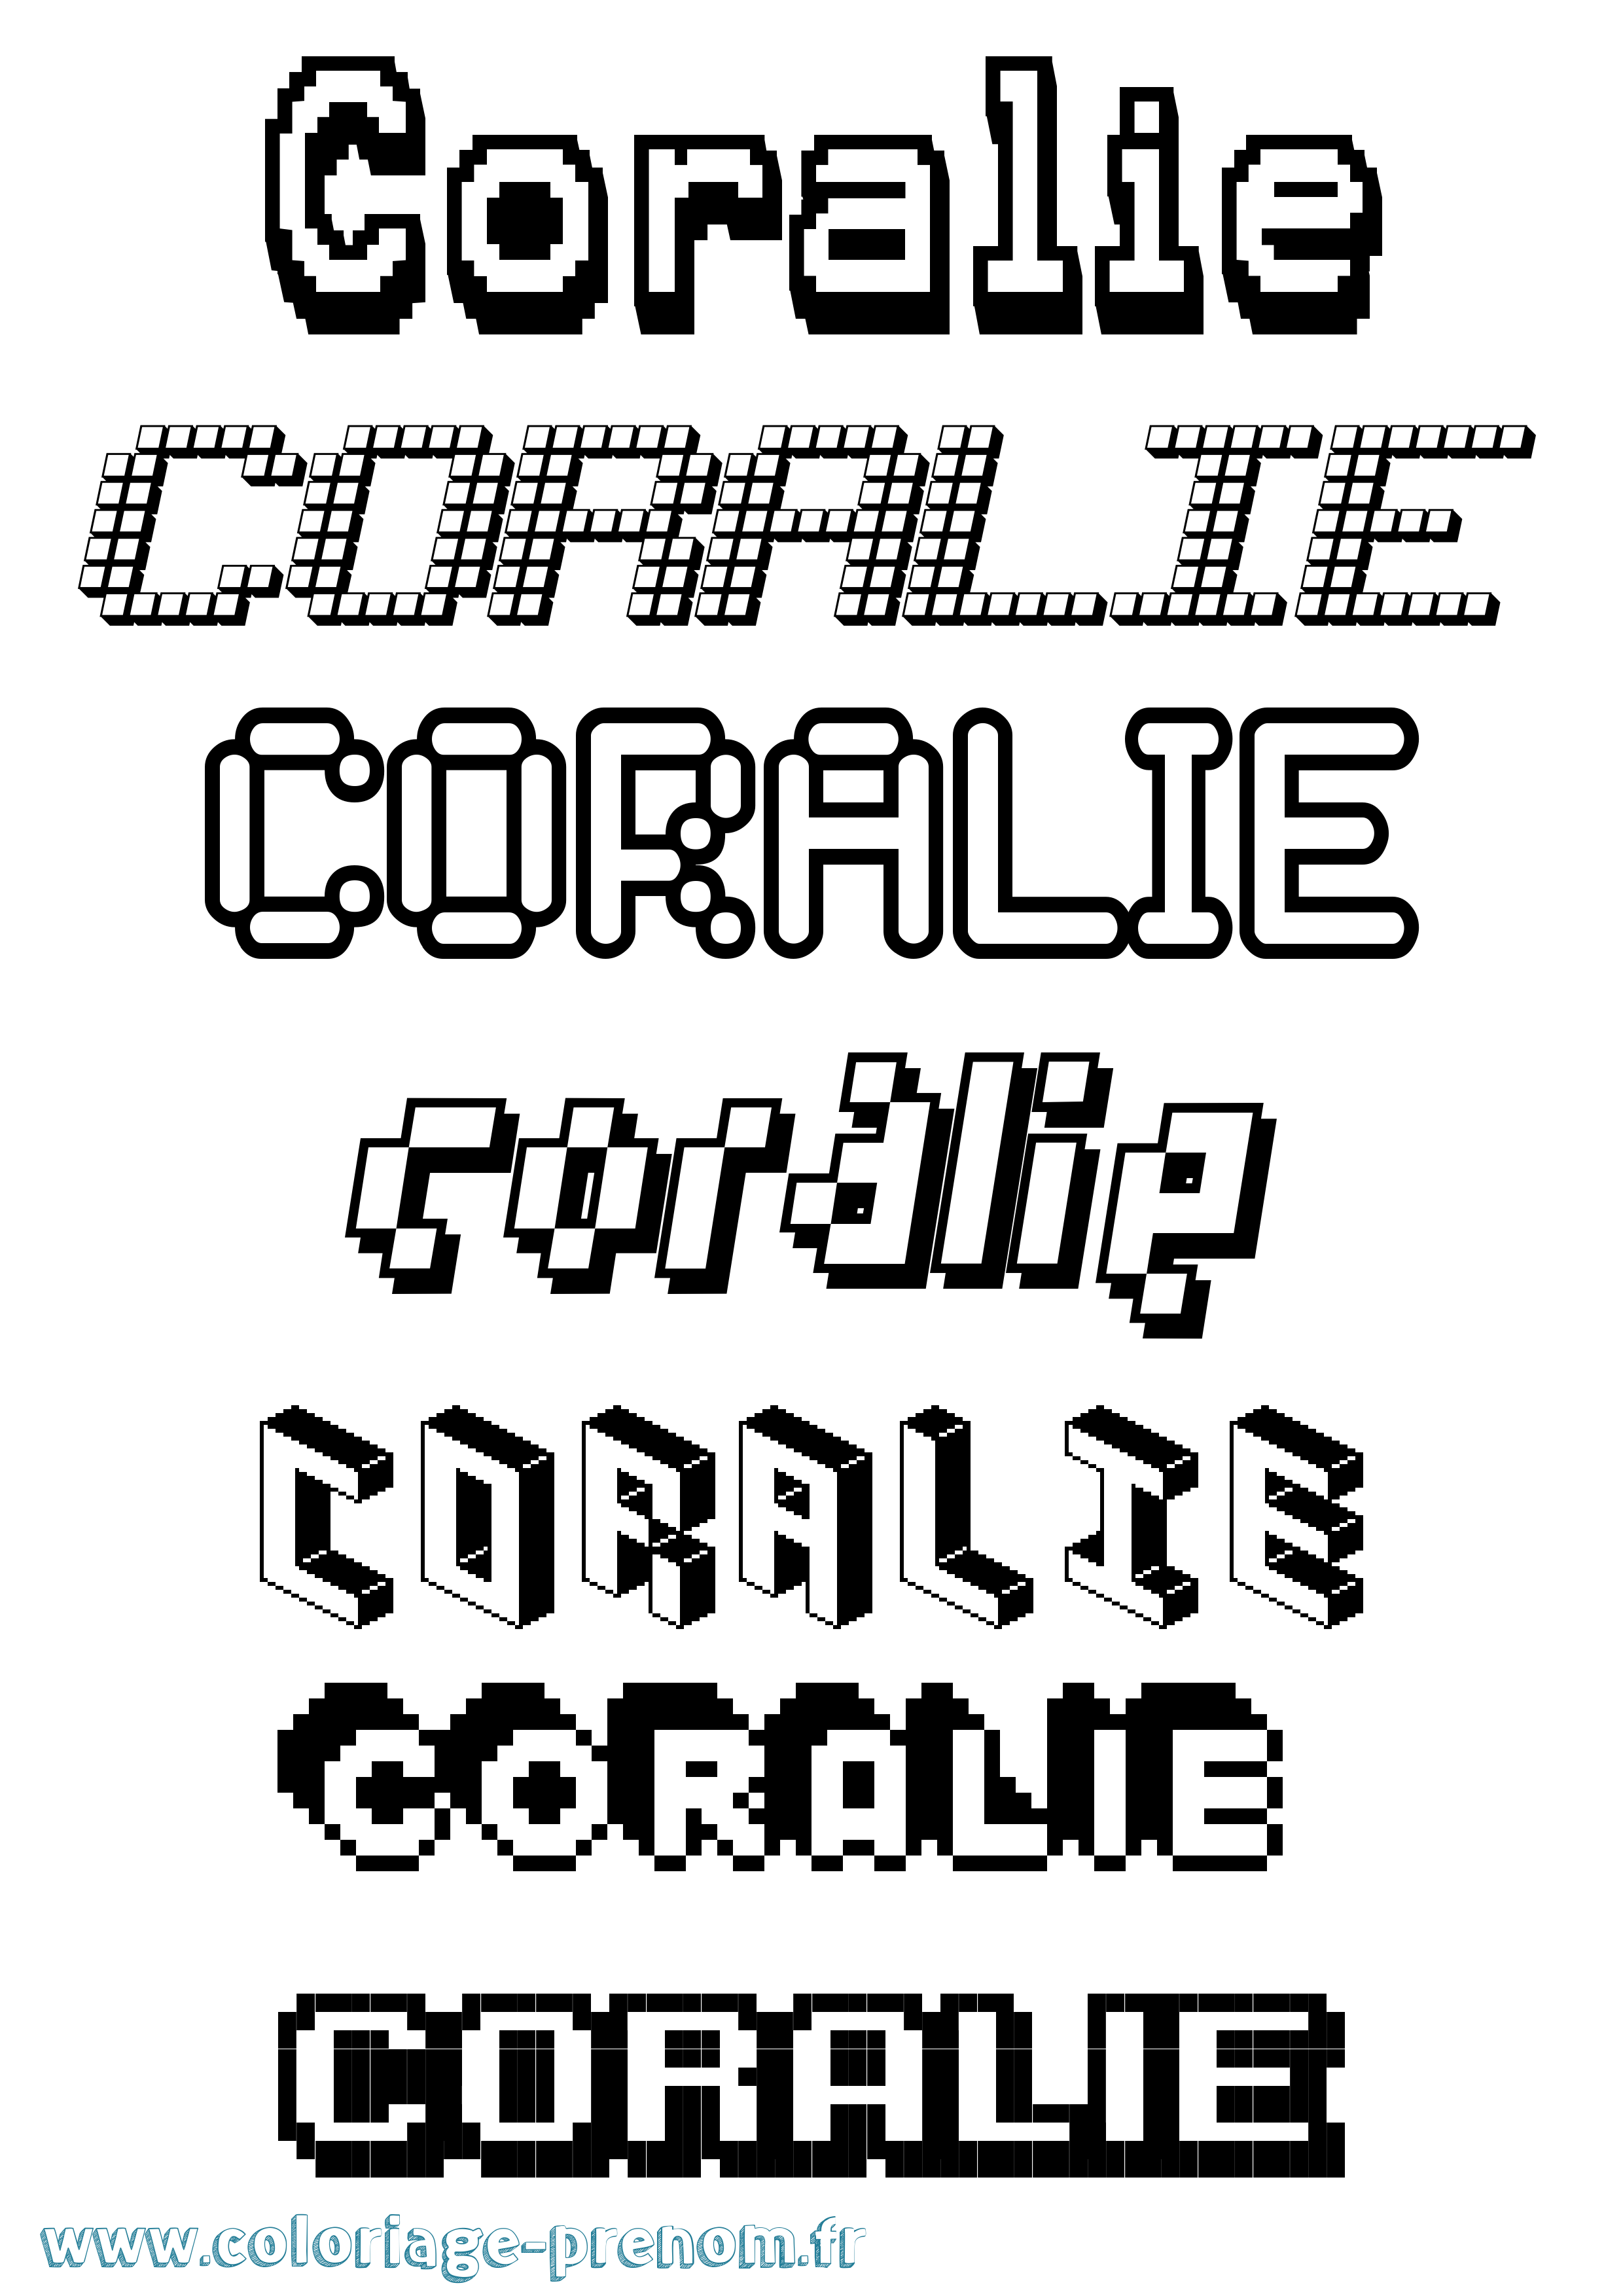 Coloriage prénom Coralie Pixel